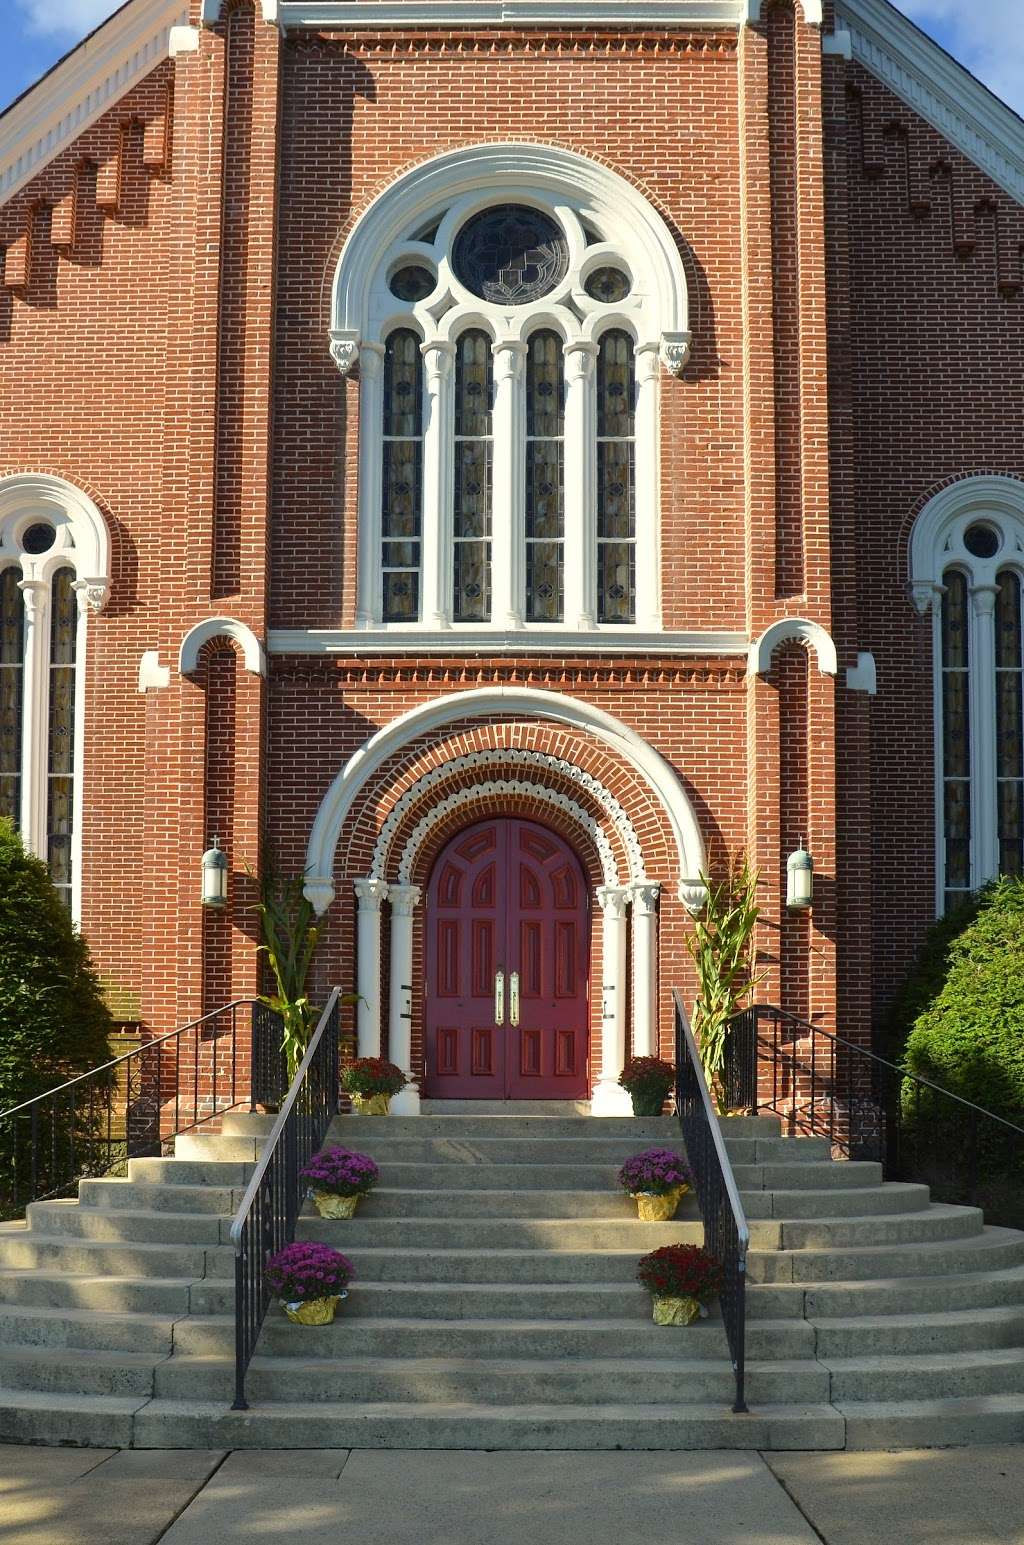 Union United Church of Christ | 5550 PA-873, Neffs, PA 18065, USA | Phone: (610) 767-6961